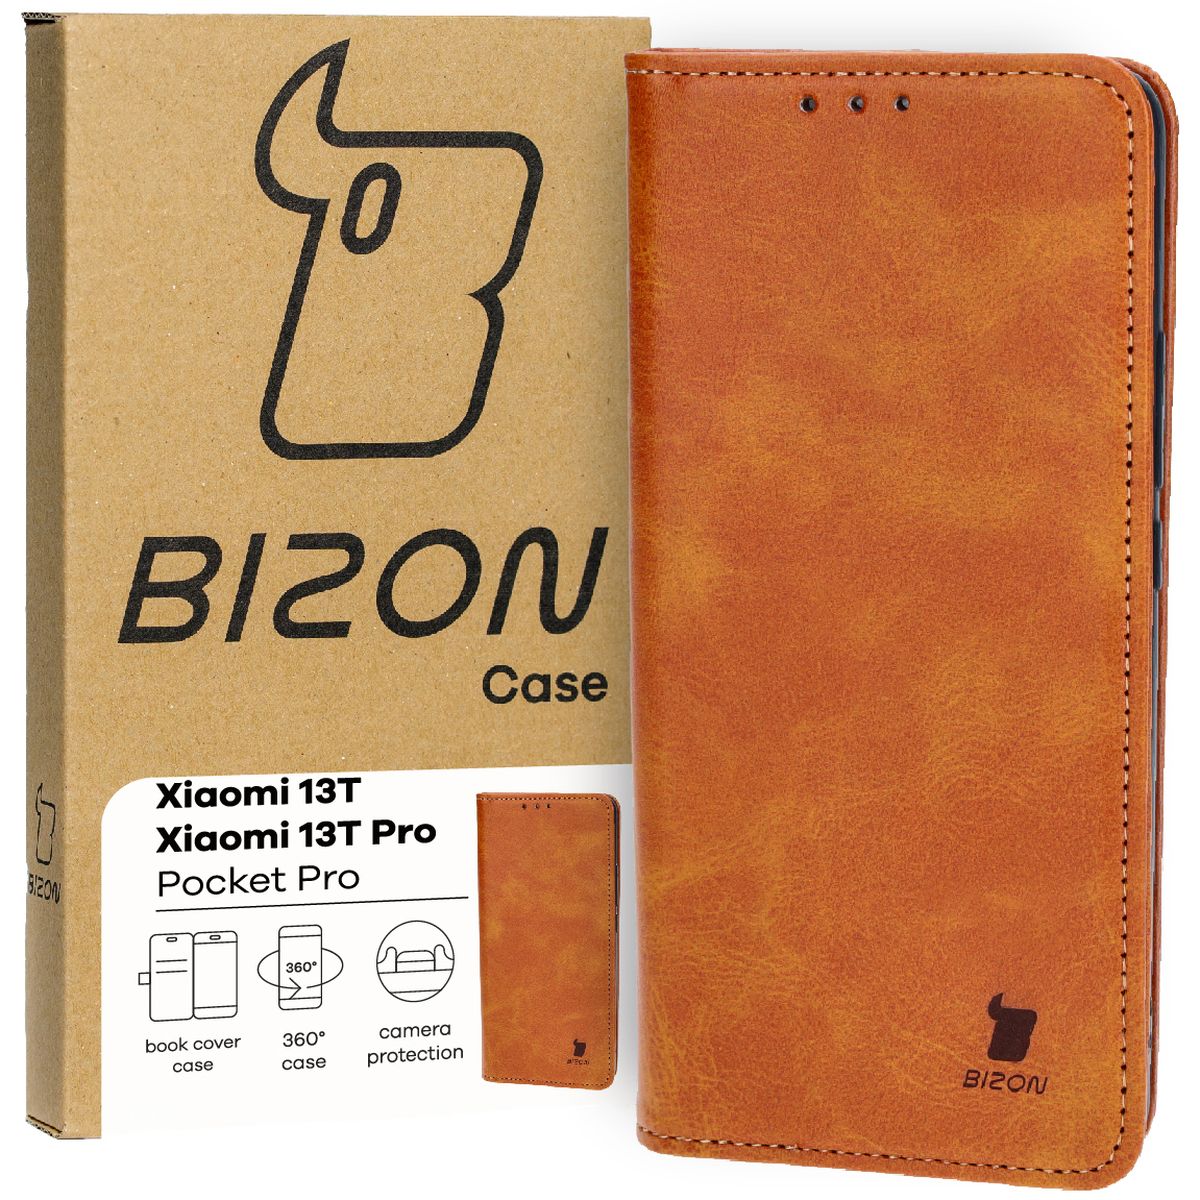 Schutzhülle für Xiaomi 13T / 13T Pro, Bizon Case Pocket Pro, Braun